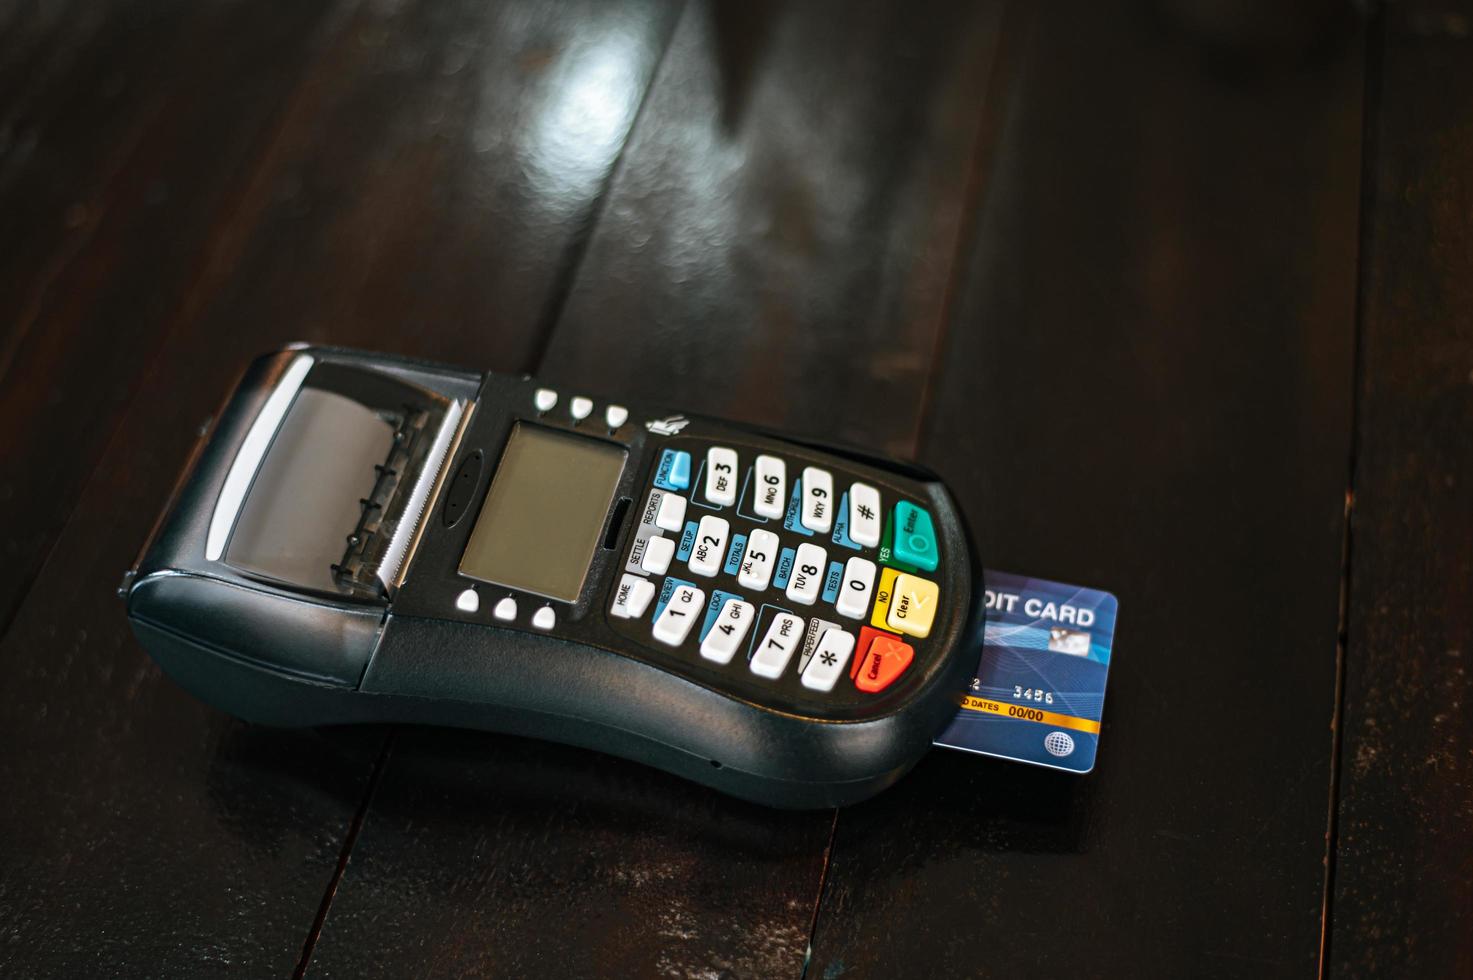 kreditkortsmaskin med insatt kreditkort på träbord foto